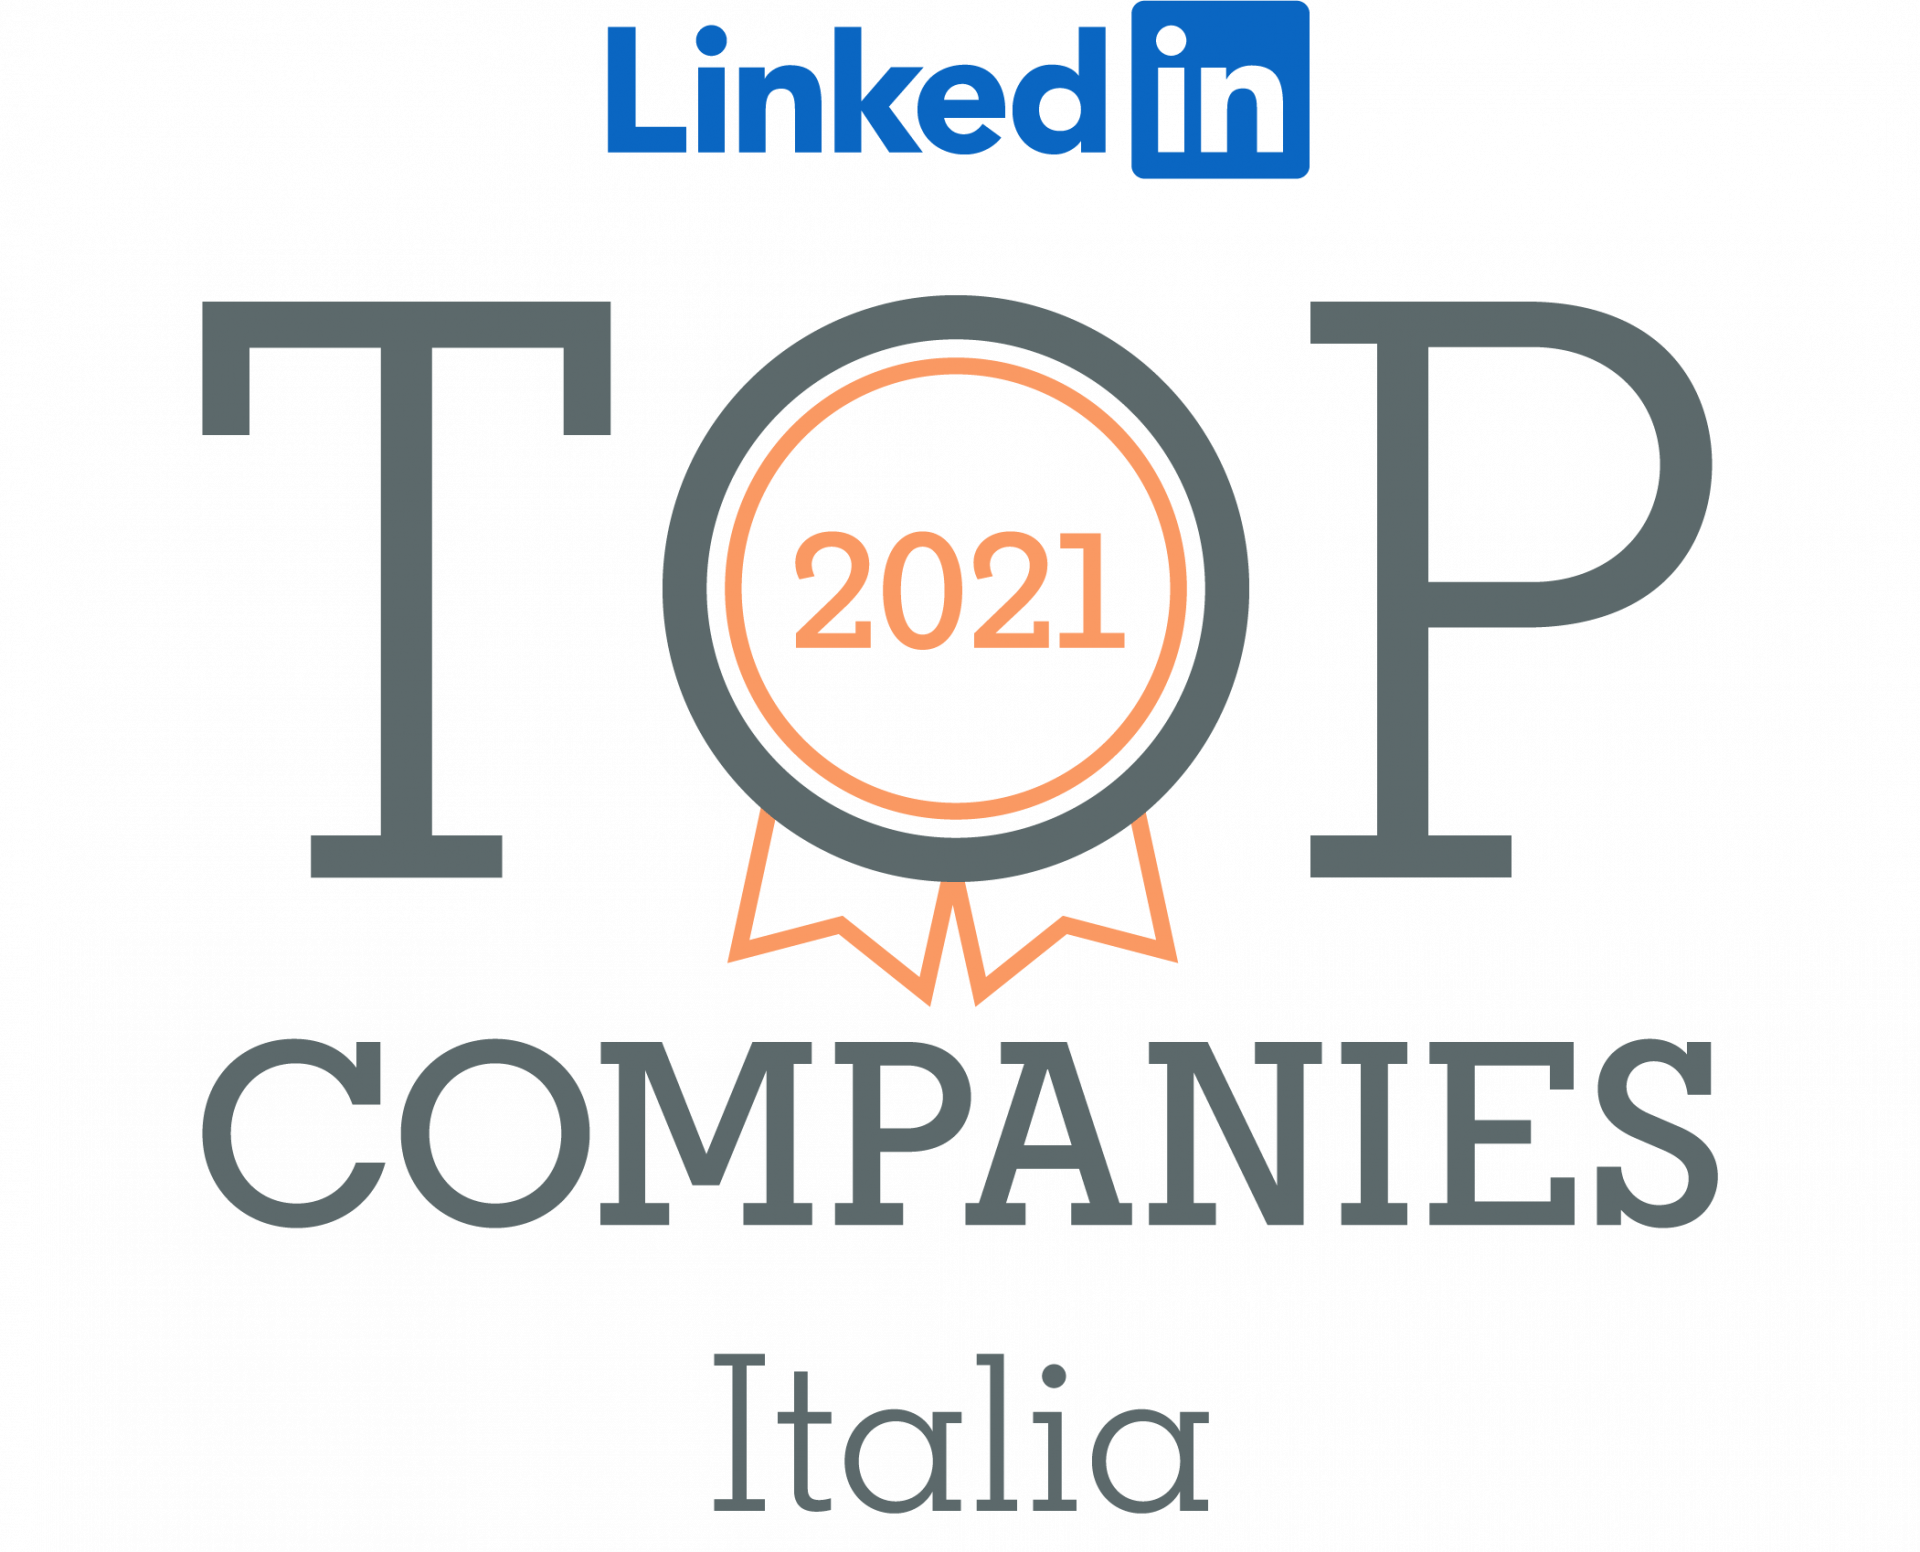 LinkedIn Top Companies 2021 la lista delle aziende nelle quali